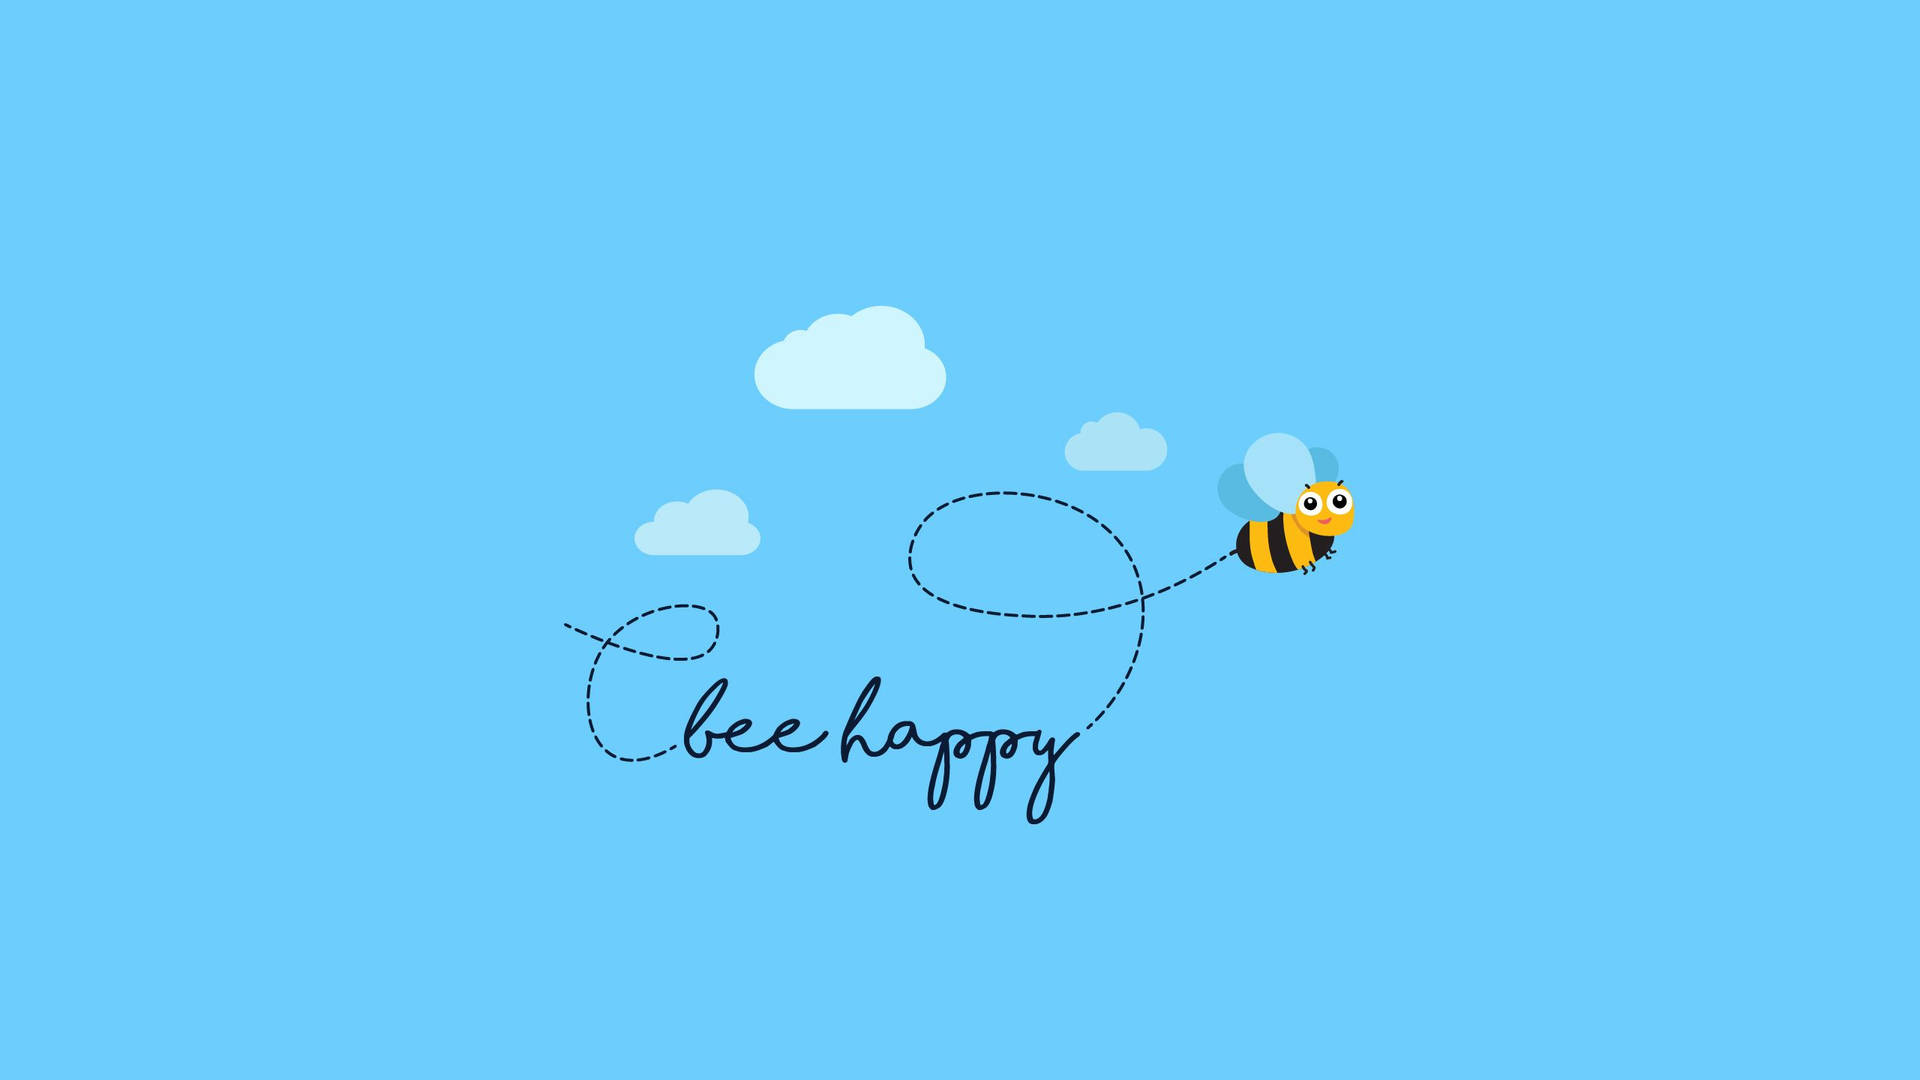 Bumble Bee Happy Bee Wallpaper